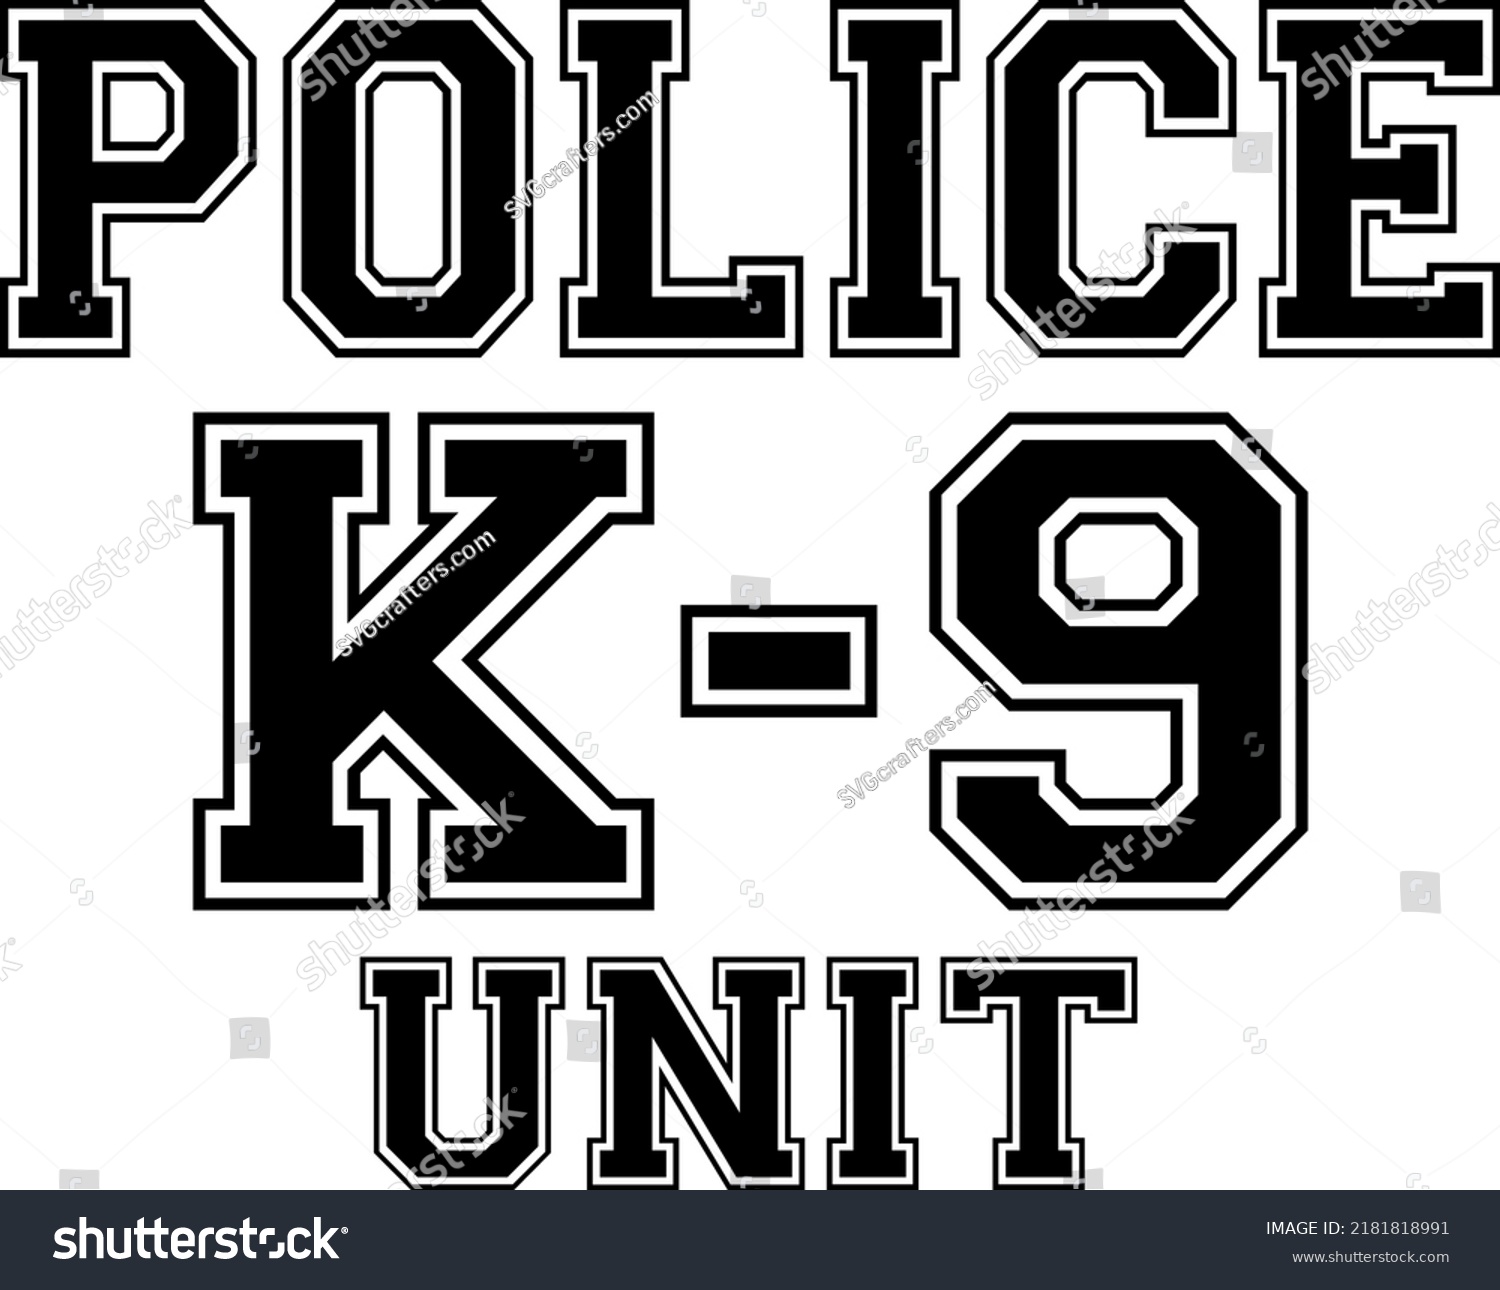 SVG of K9 police dog vector illustration svg